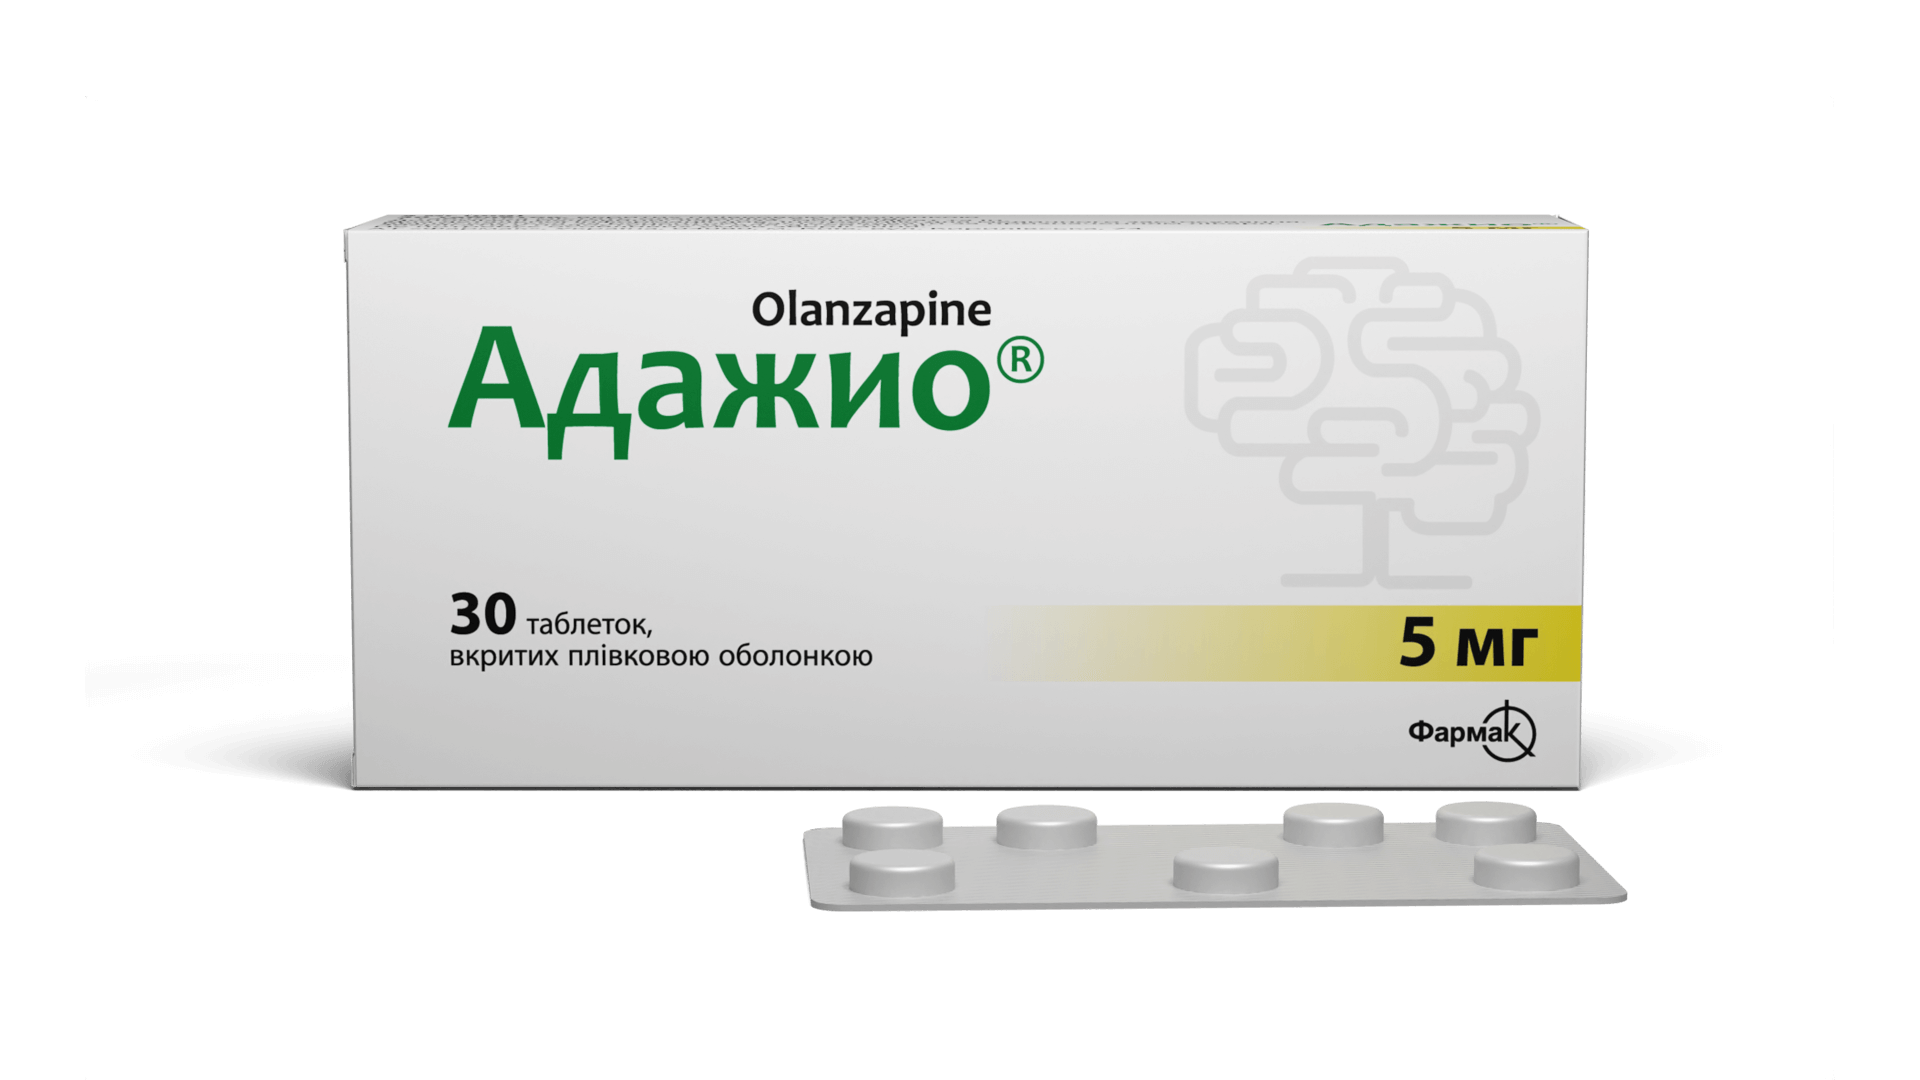 Адажио® 5 мг (2)